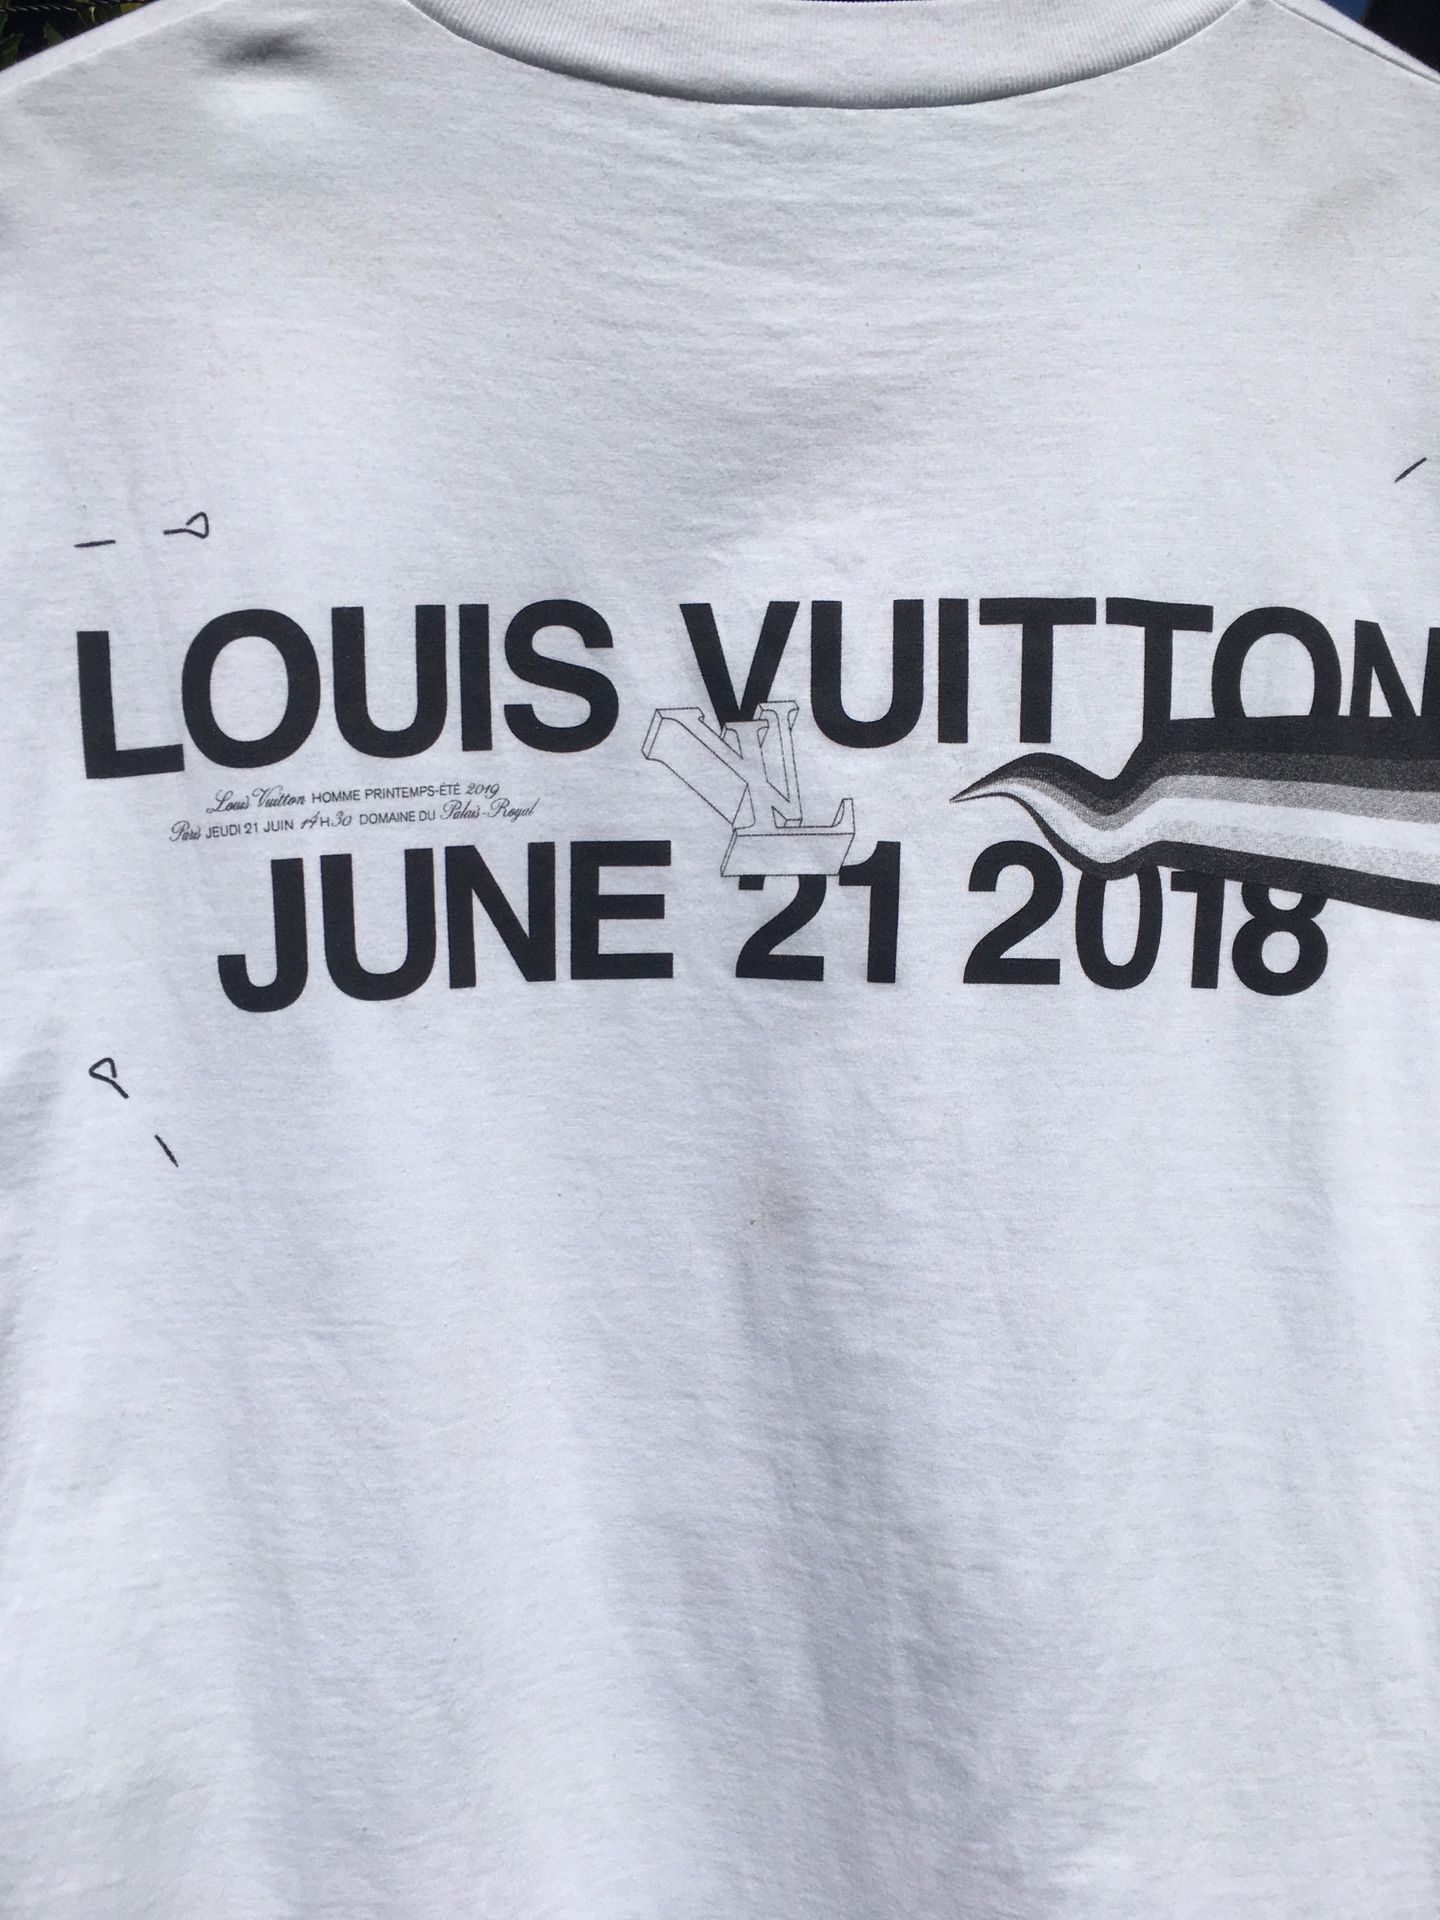 Louis Vuitton Monogram Gradient T-Shirt Noir/Black for Sale in Hialeah, FL  - OfferUp